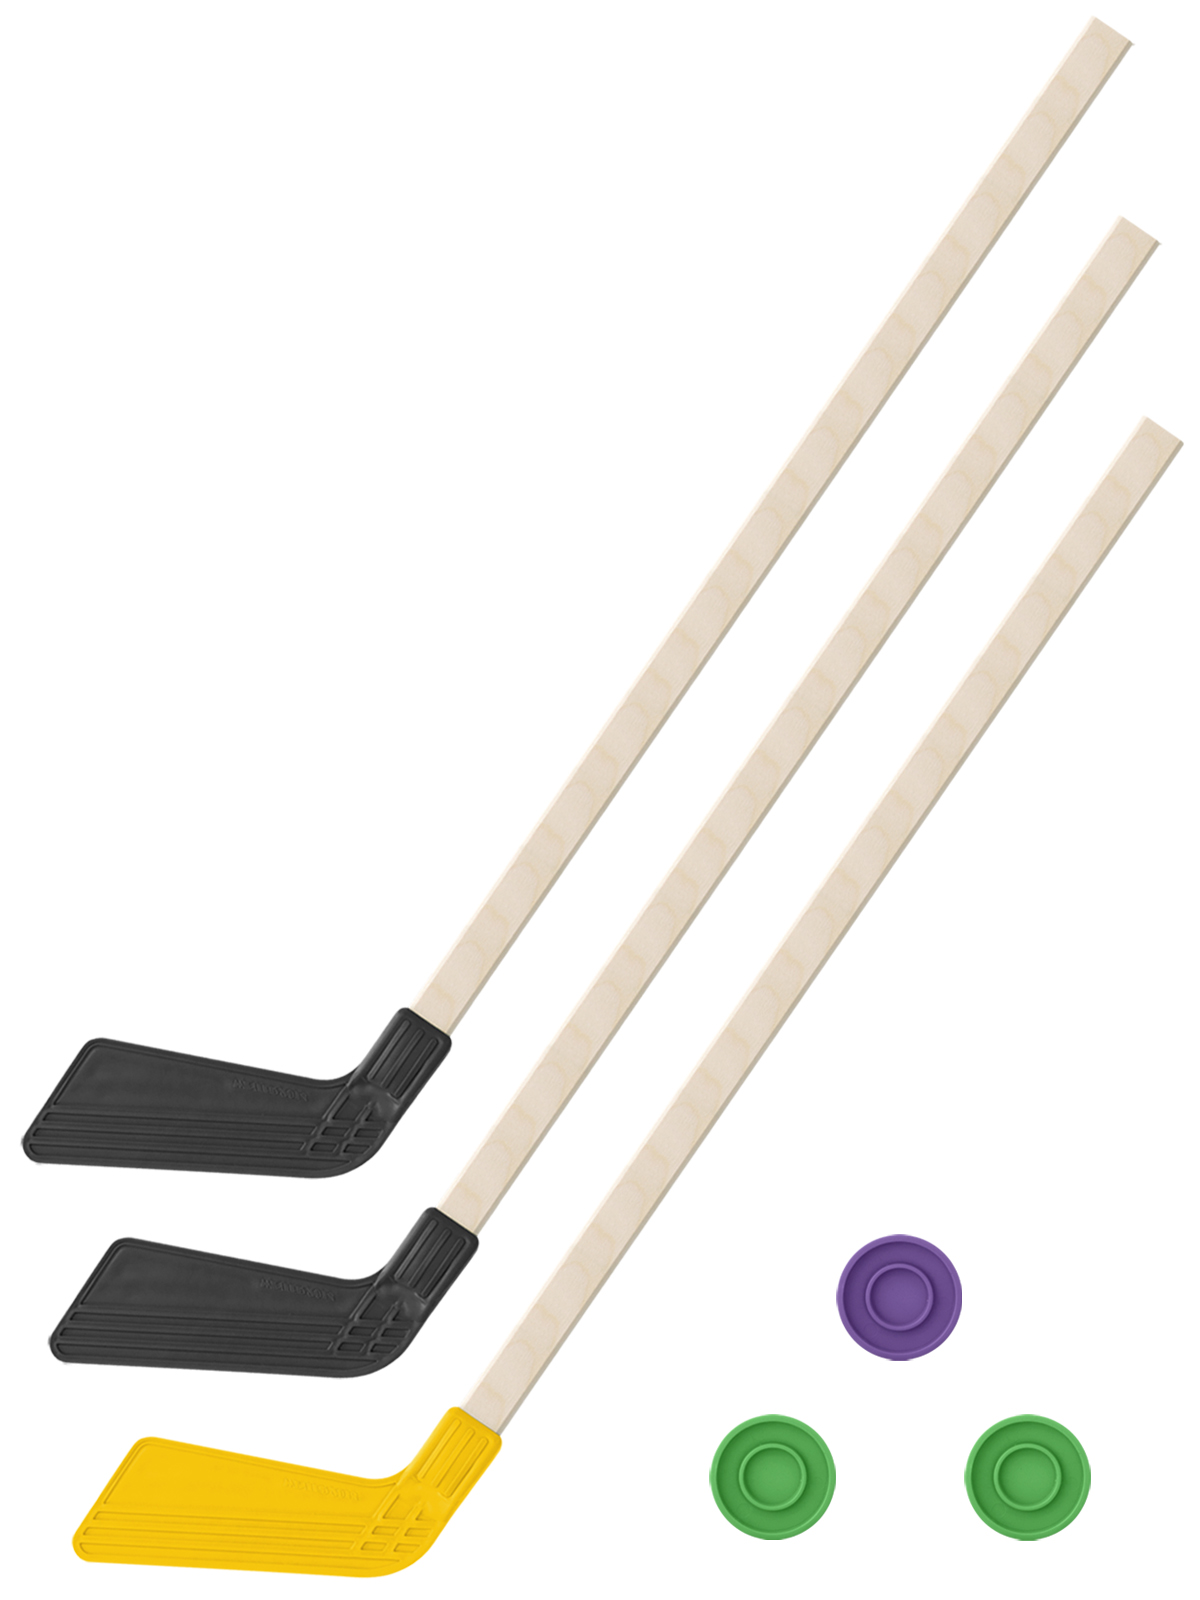 Детский хоккейный набор Задира-плюс 3 в 1 Клюшка хоккейная 80 см (2черн, 1жел) + 3 шайбы детский хоккейный набор задира плюс 3 в 1 клюшка хоккейная 80см жёл черн син 3 шайбы